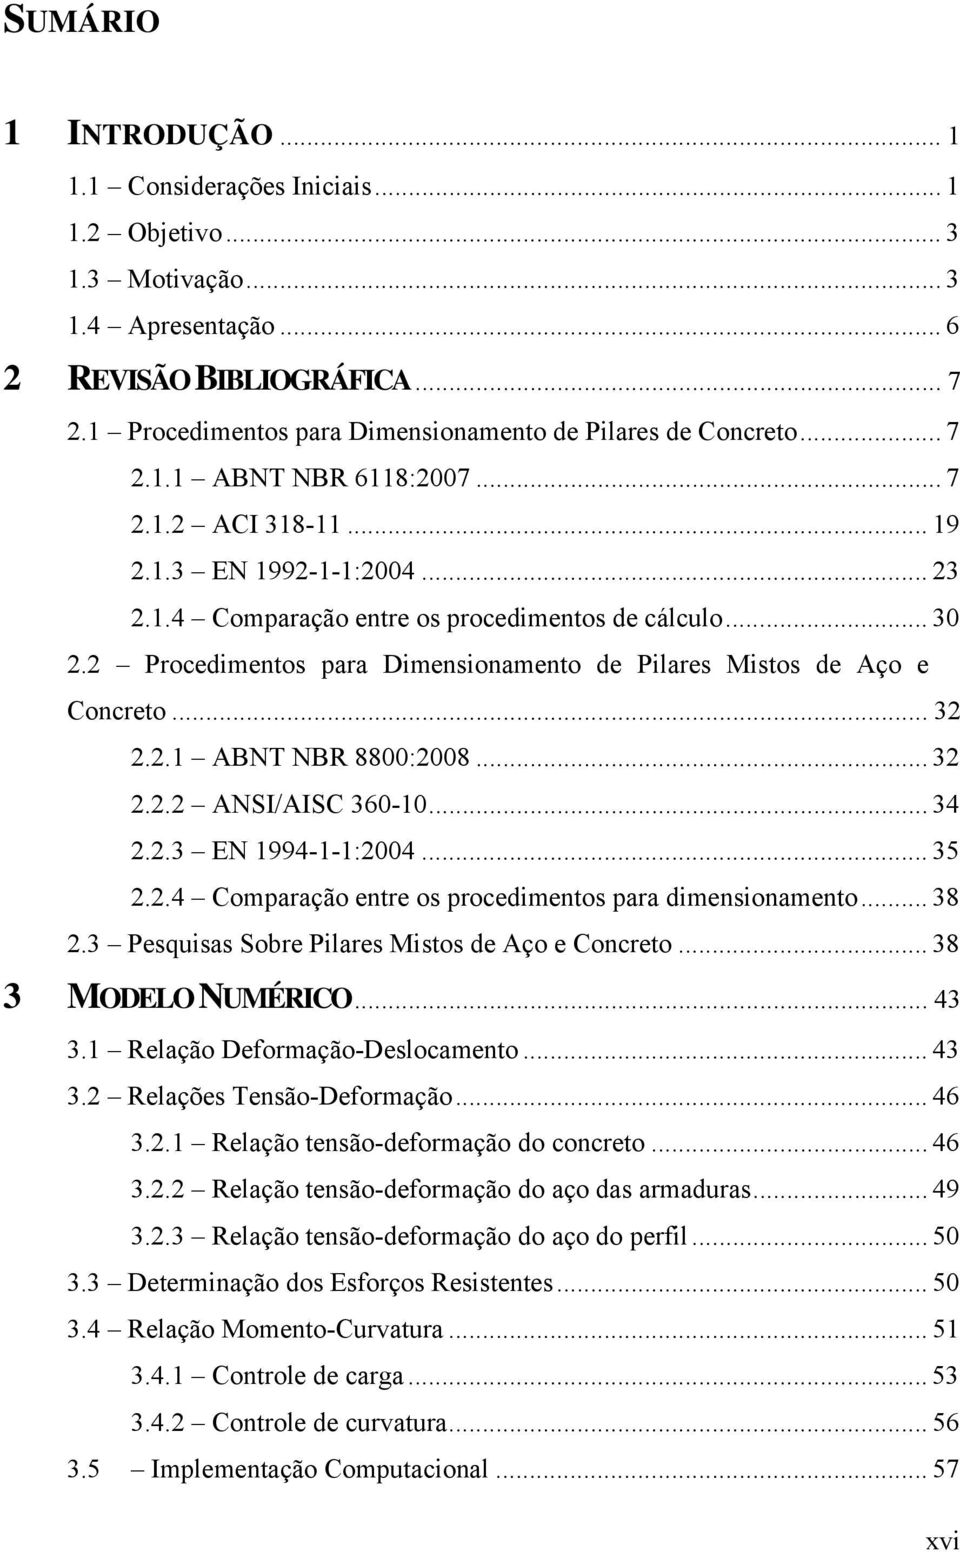 .. 30 2.2 Procedimentos para Dimensionamento de Pilares Mistos de Aço e Concreto... 32 2.2.1 ABNT NBR 8800:2008... 32 2.2.2 ANSI/AISC 360-10... 34 2.2.3 EN 1994-1-1:2004... 35 2.2.4 Comparação entre os procedimentos para dimensionamento.